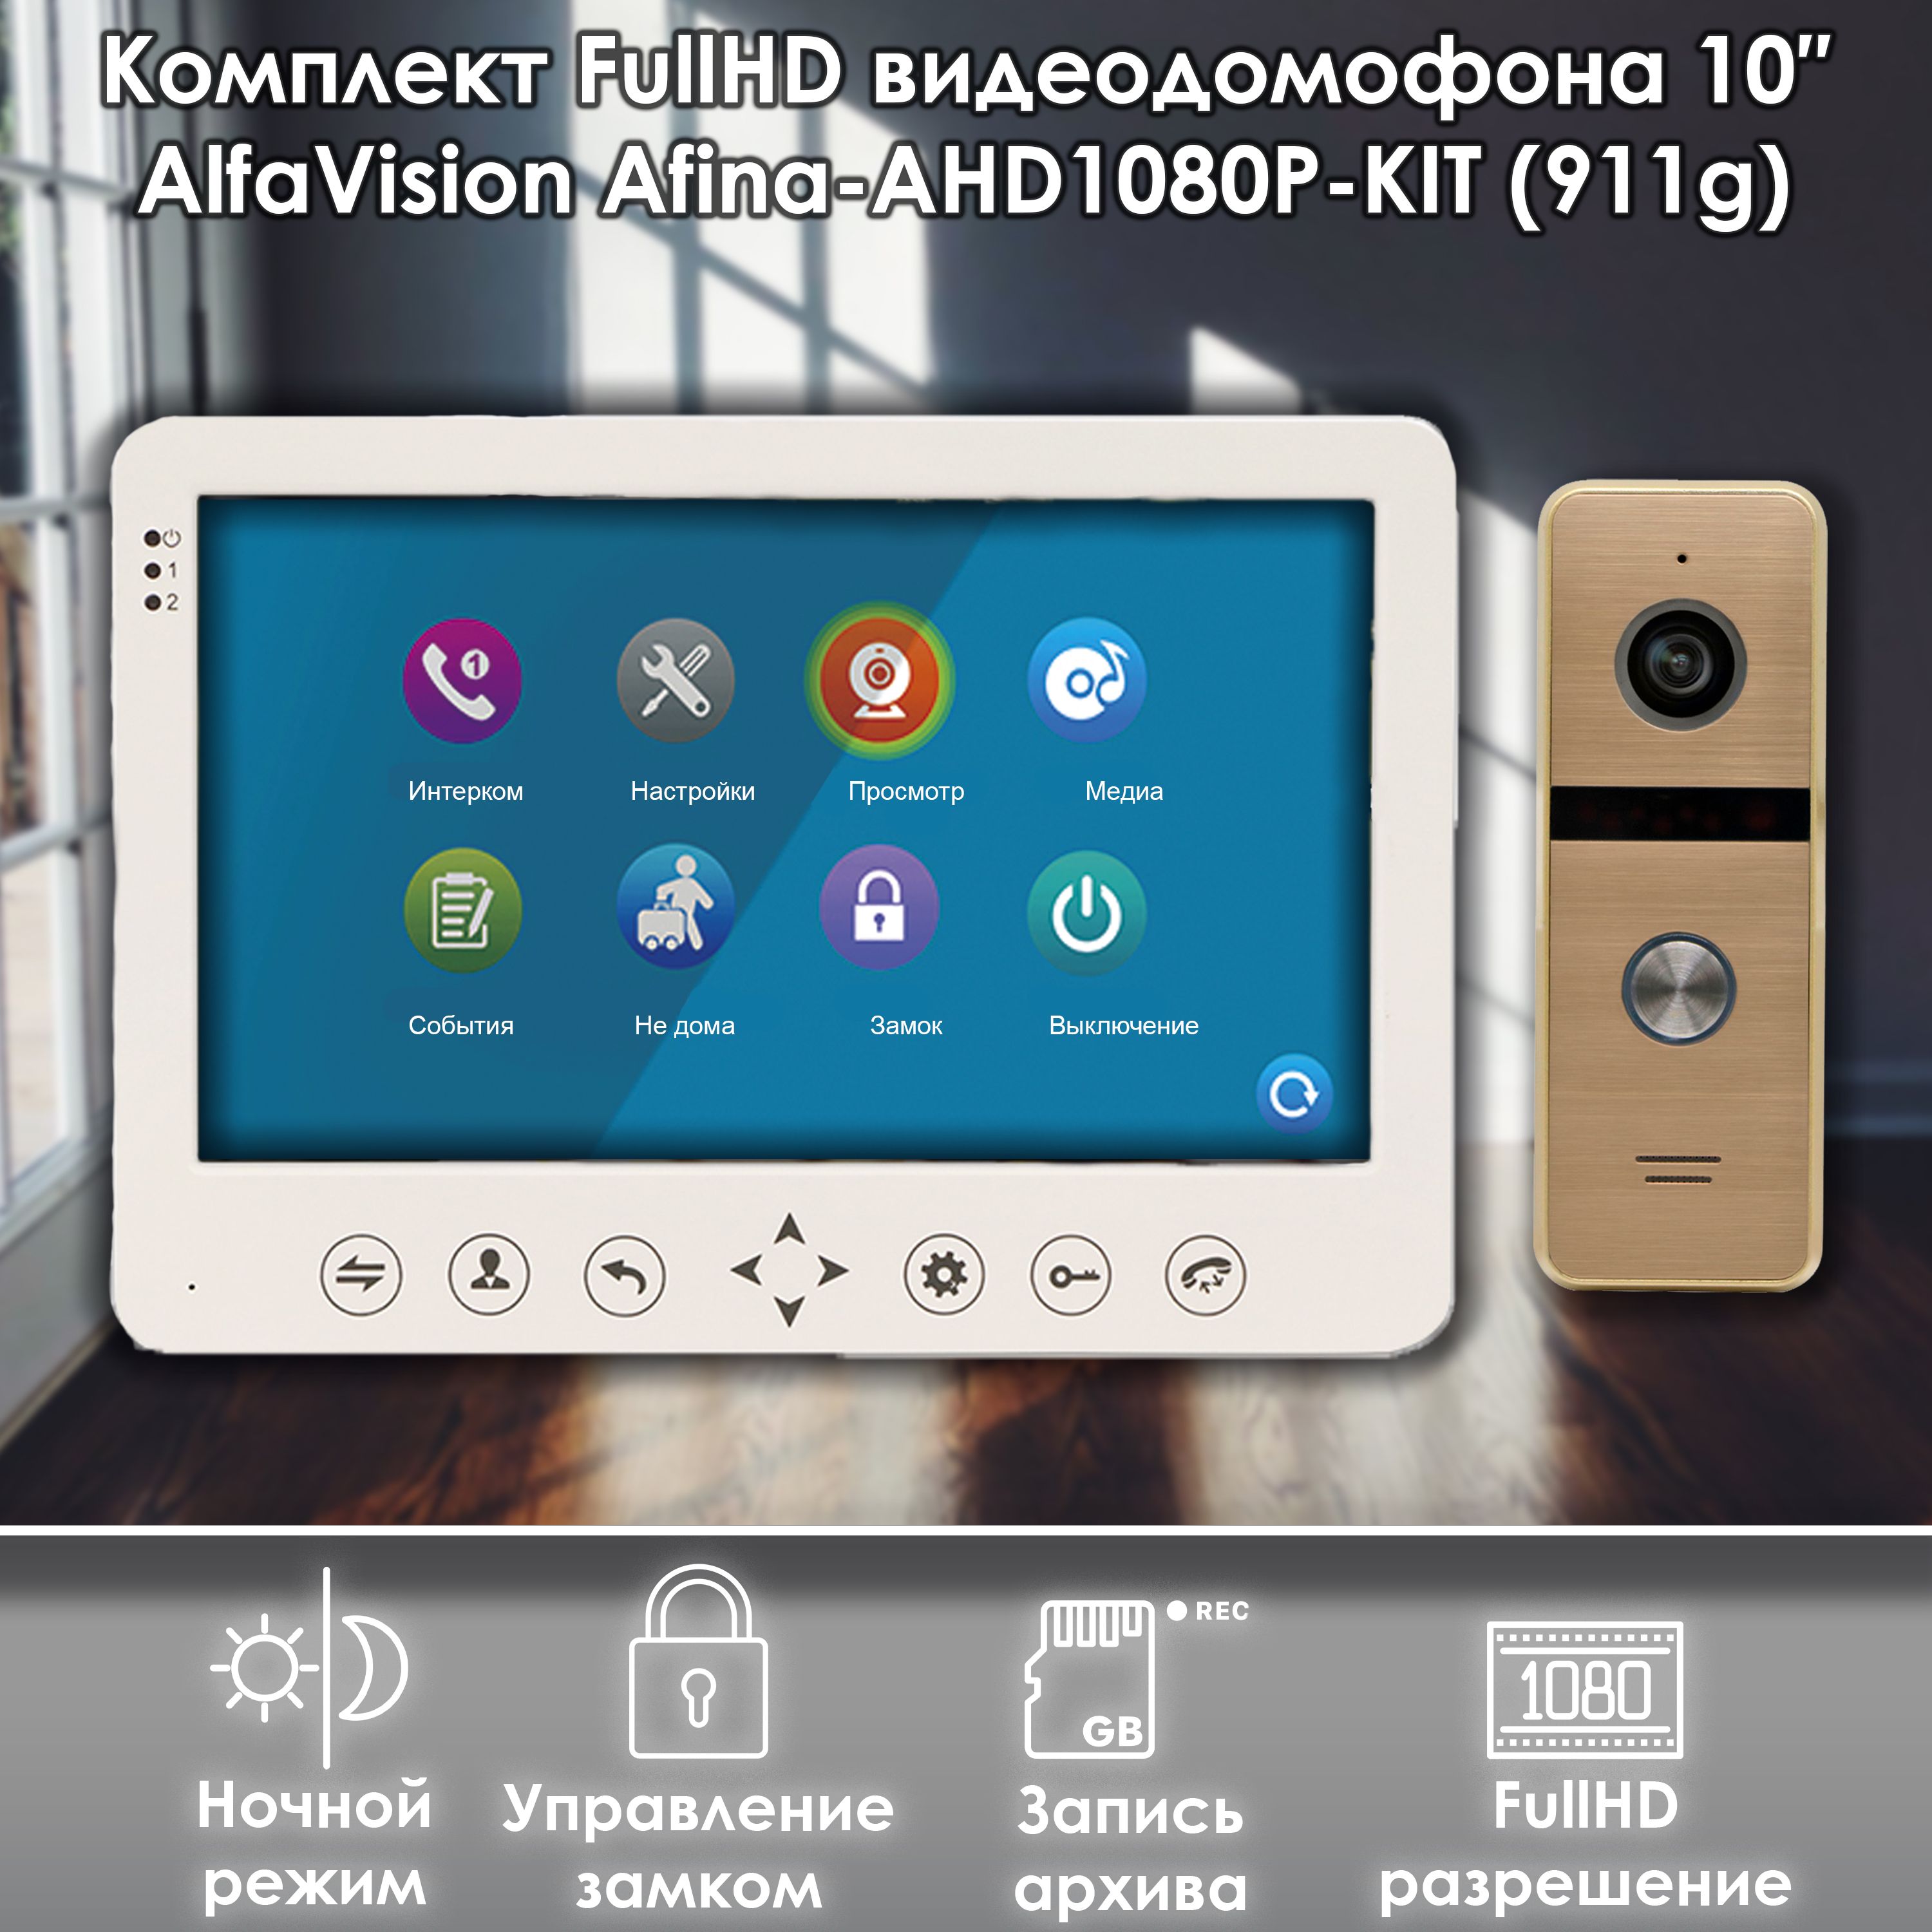 Комплект видеодомофона Alfavision AFINA-AHD1080P-KIT (911go) Full HD, 10 дюймов